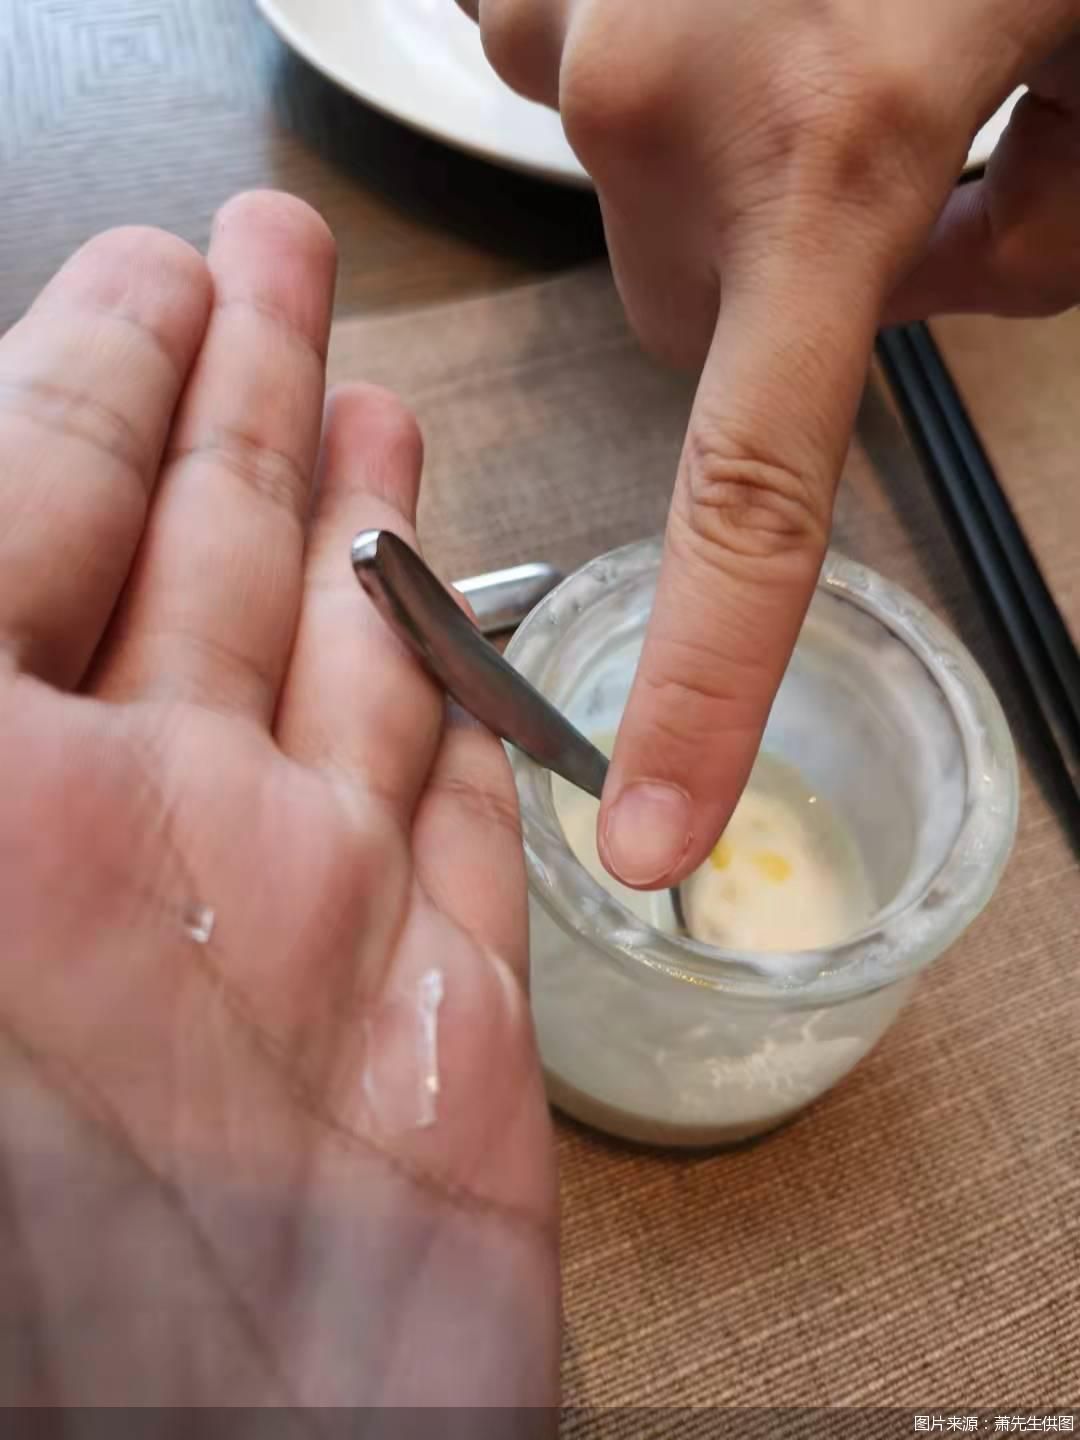 图为萧先生一家在天津四季酒店吃早餐时在酸奶瓶中发现的碎玻璃